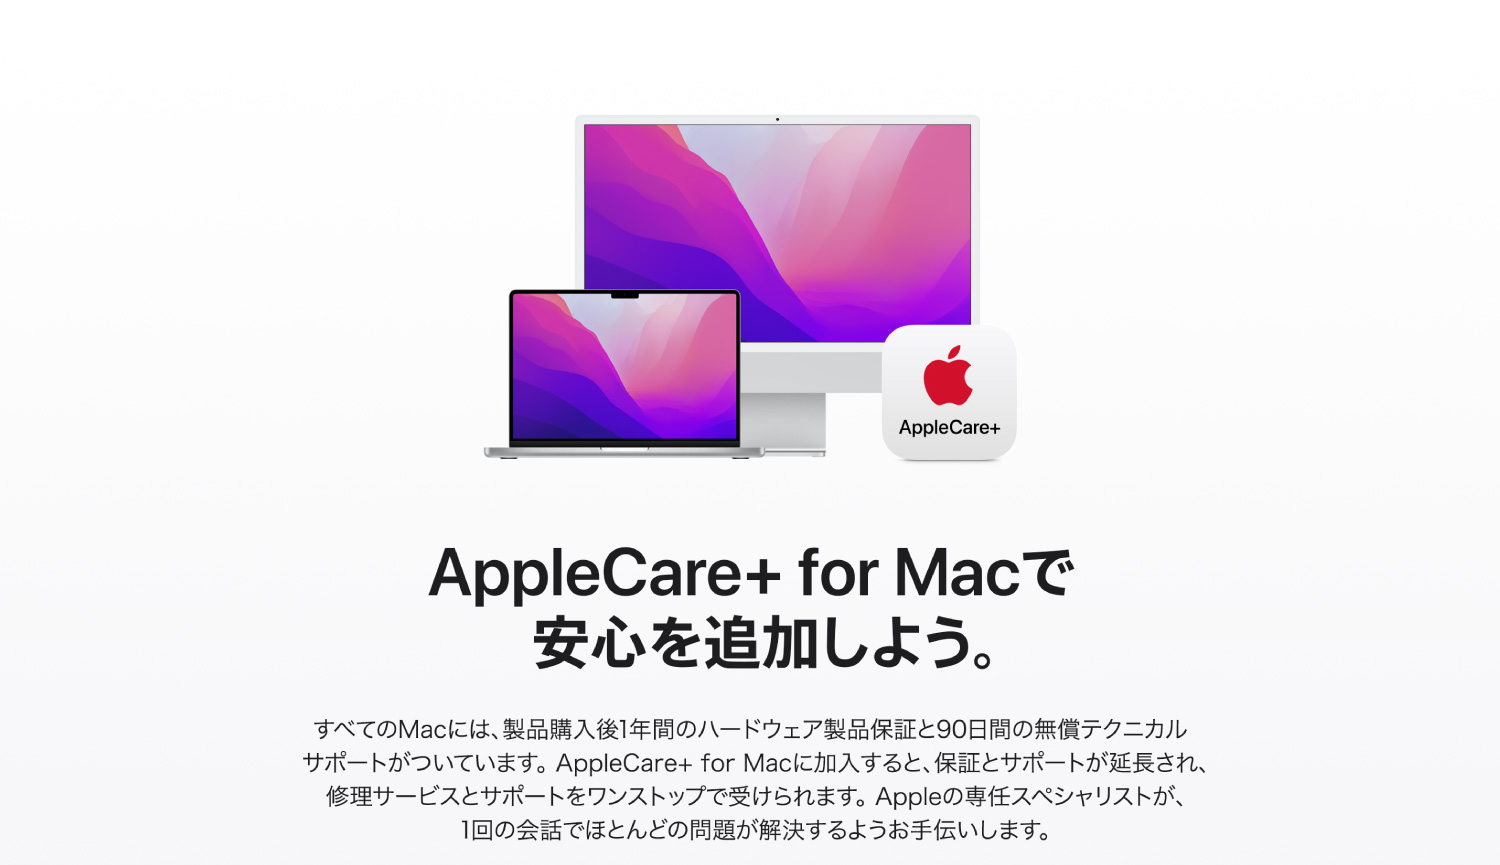 在AppleCare+for Mac追加安心吧。